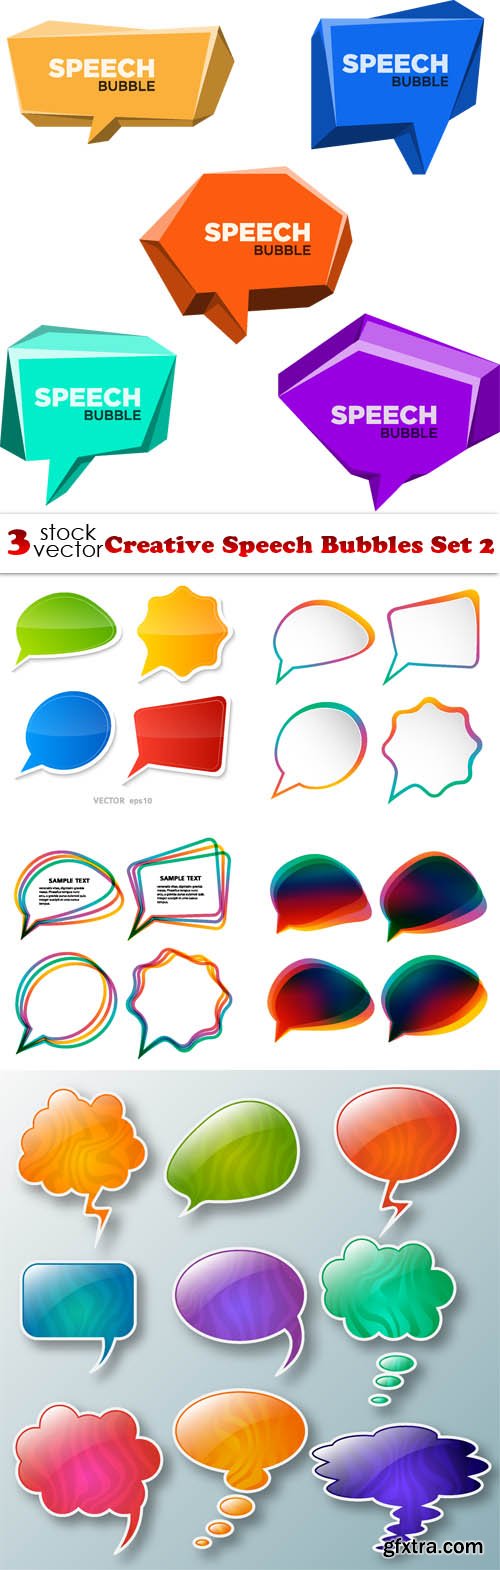 Vectors - Creative Speech Bubbles Set 2